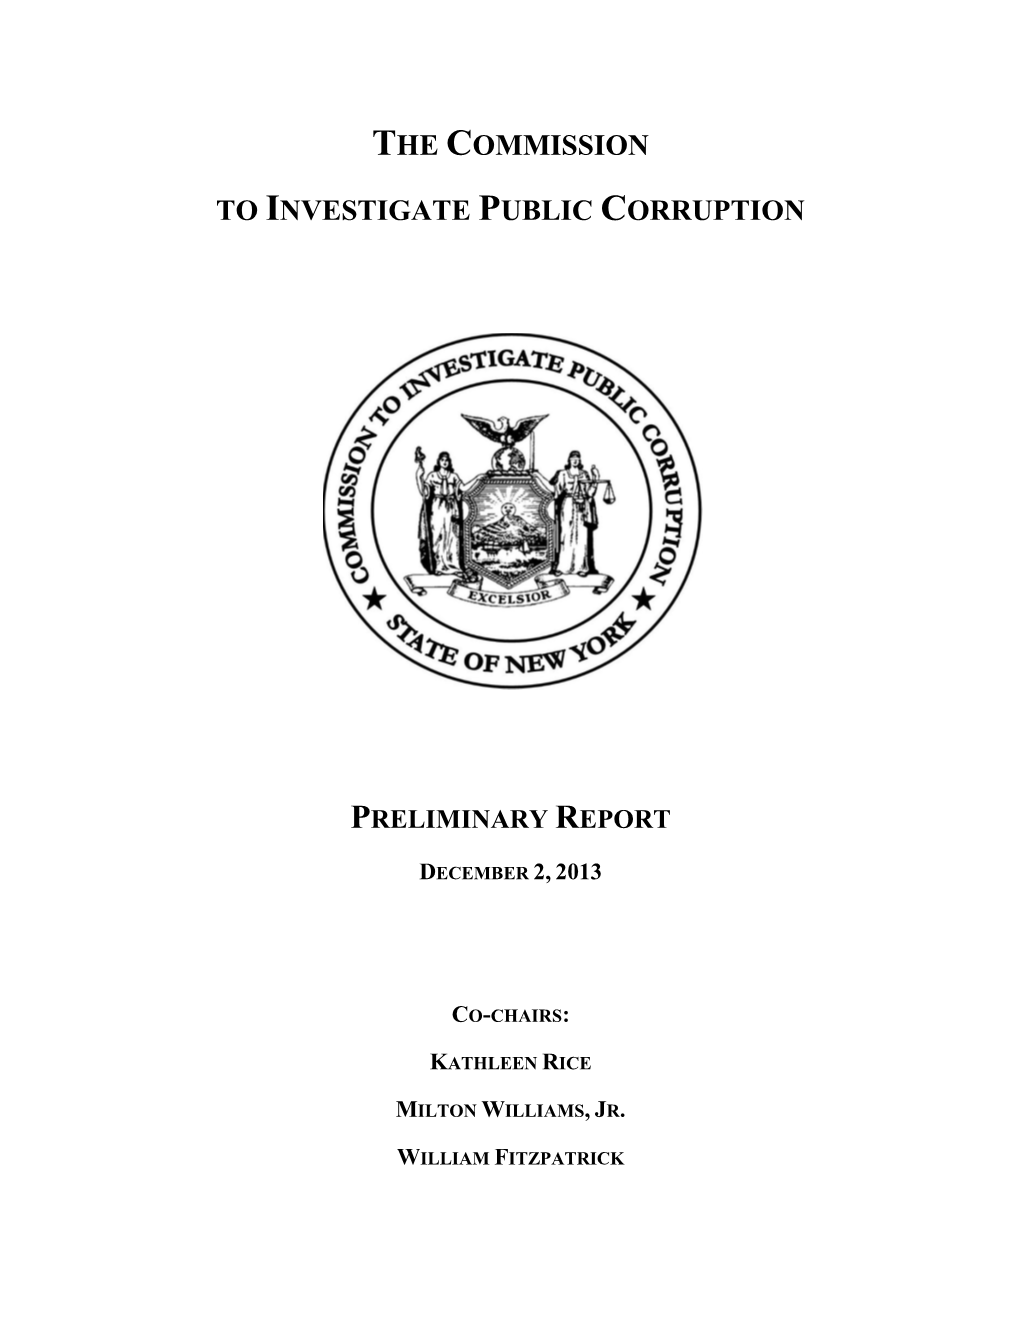 The Commission to Investigate Public Corruption